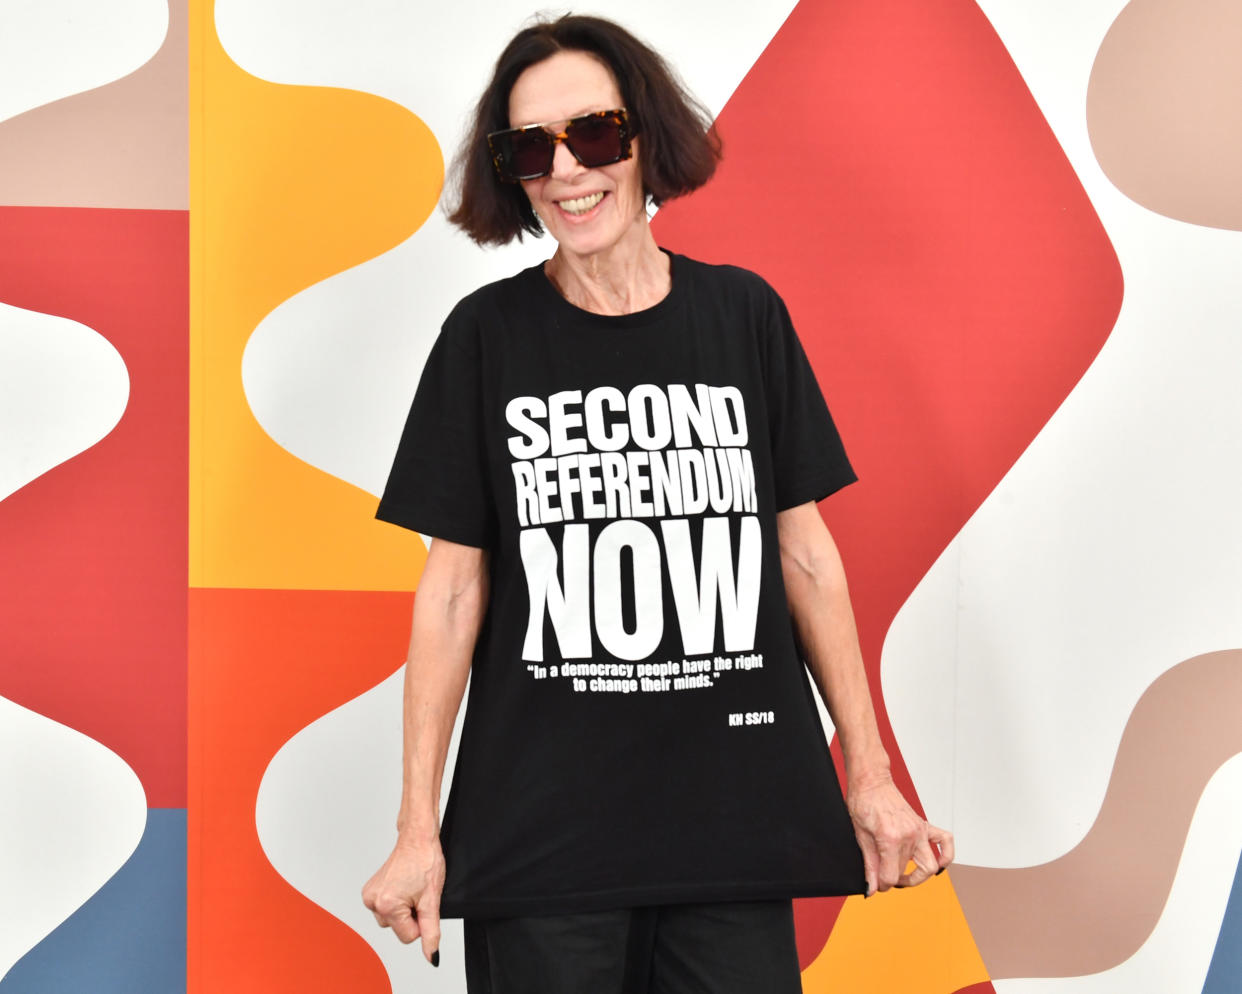 “Zweites Referendum JETZT” Die britische Designerin Katharine Hamnett gilt als die Königin des Statement-T-Shirts. Klar, dass sie auch Anti-Brexit-Parolen in petto hat. (Bild: Getty Images)